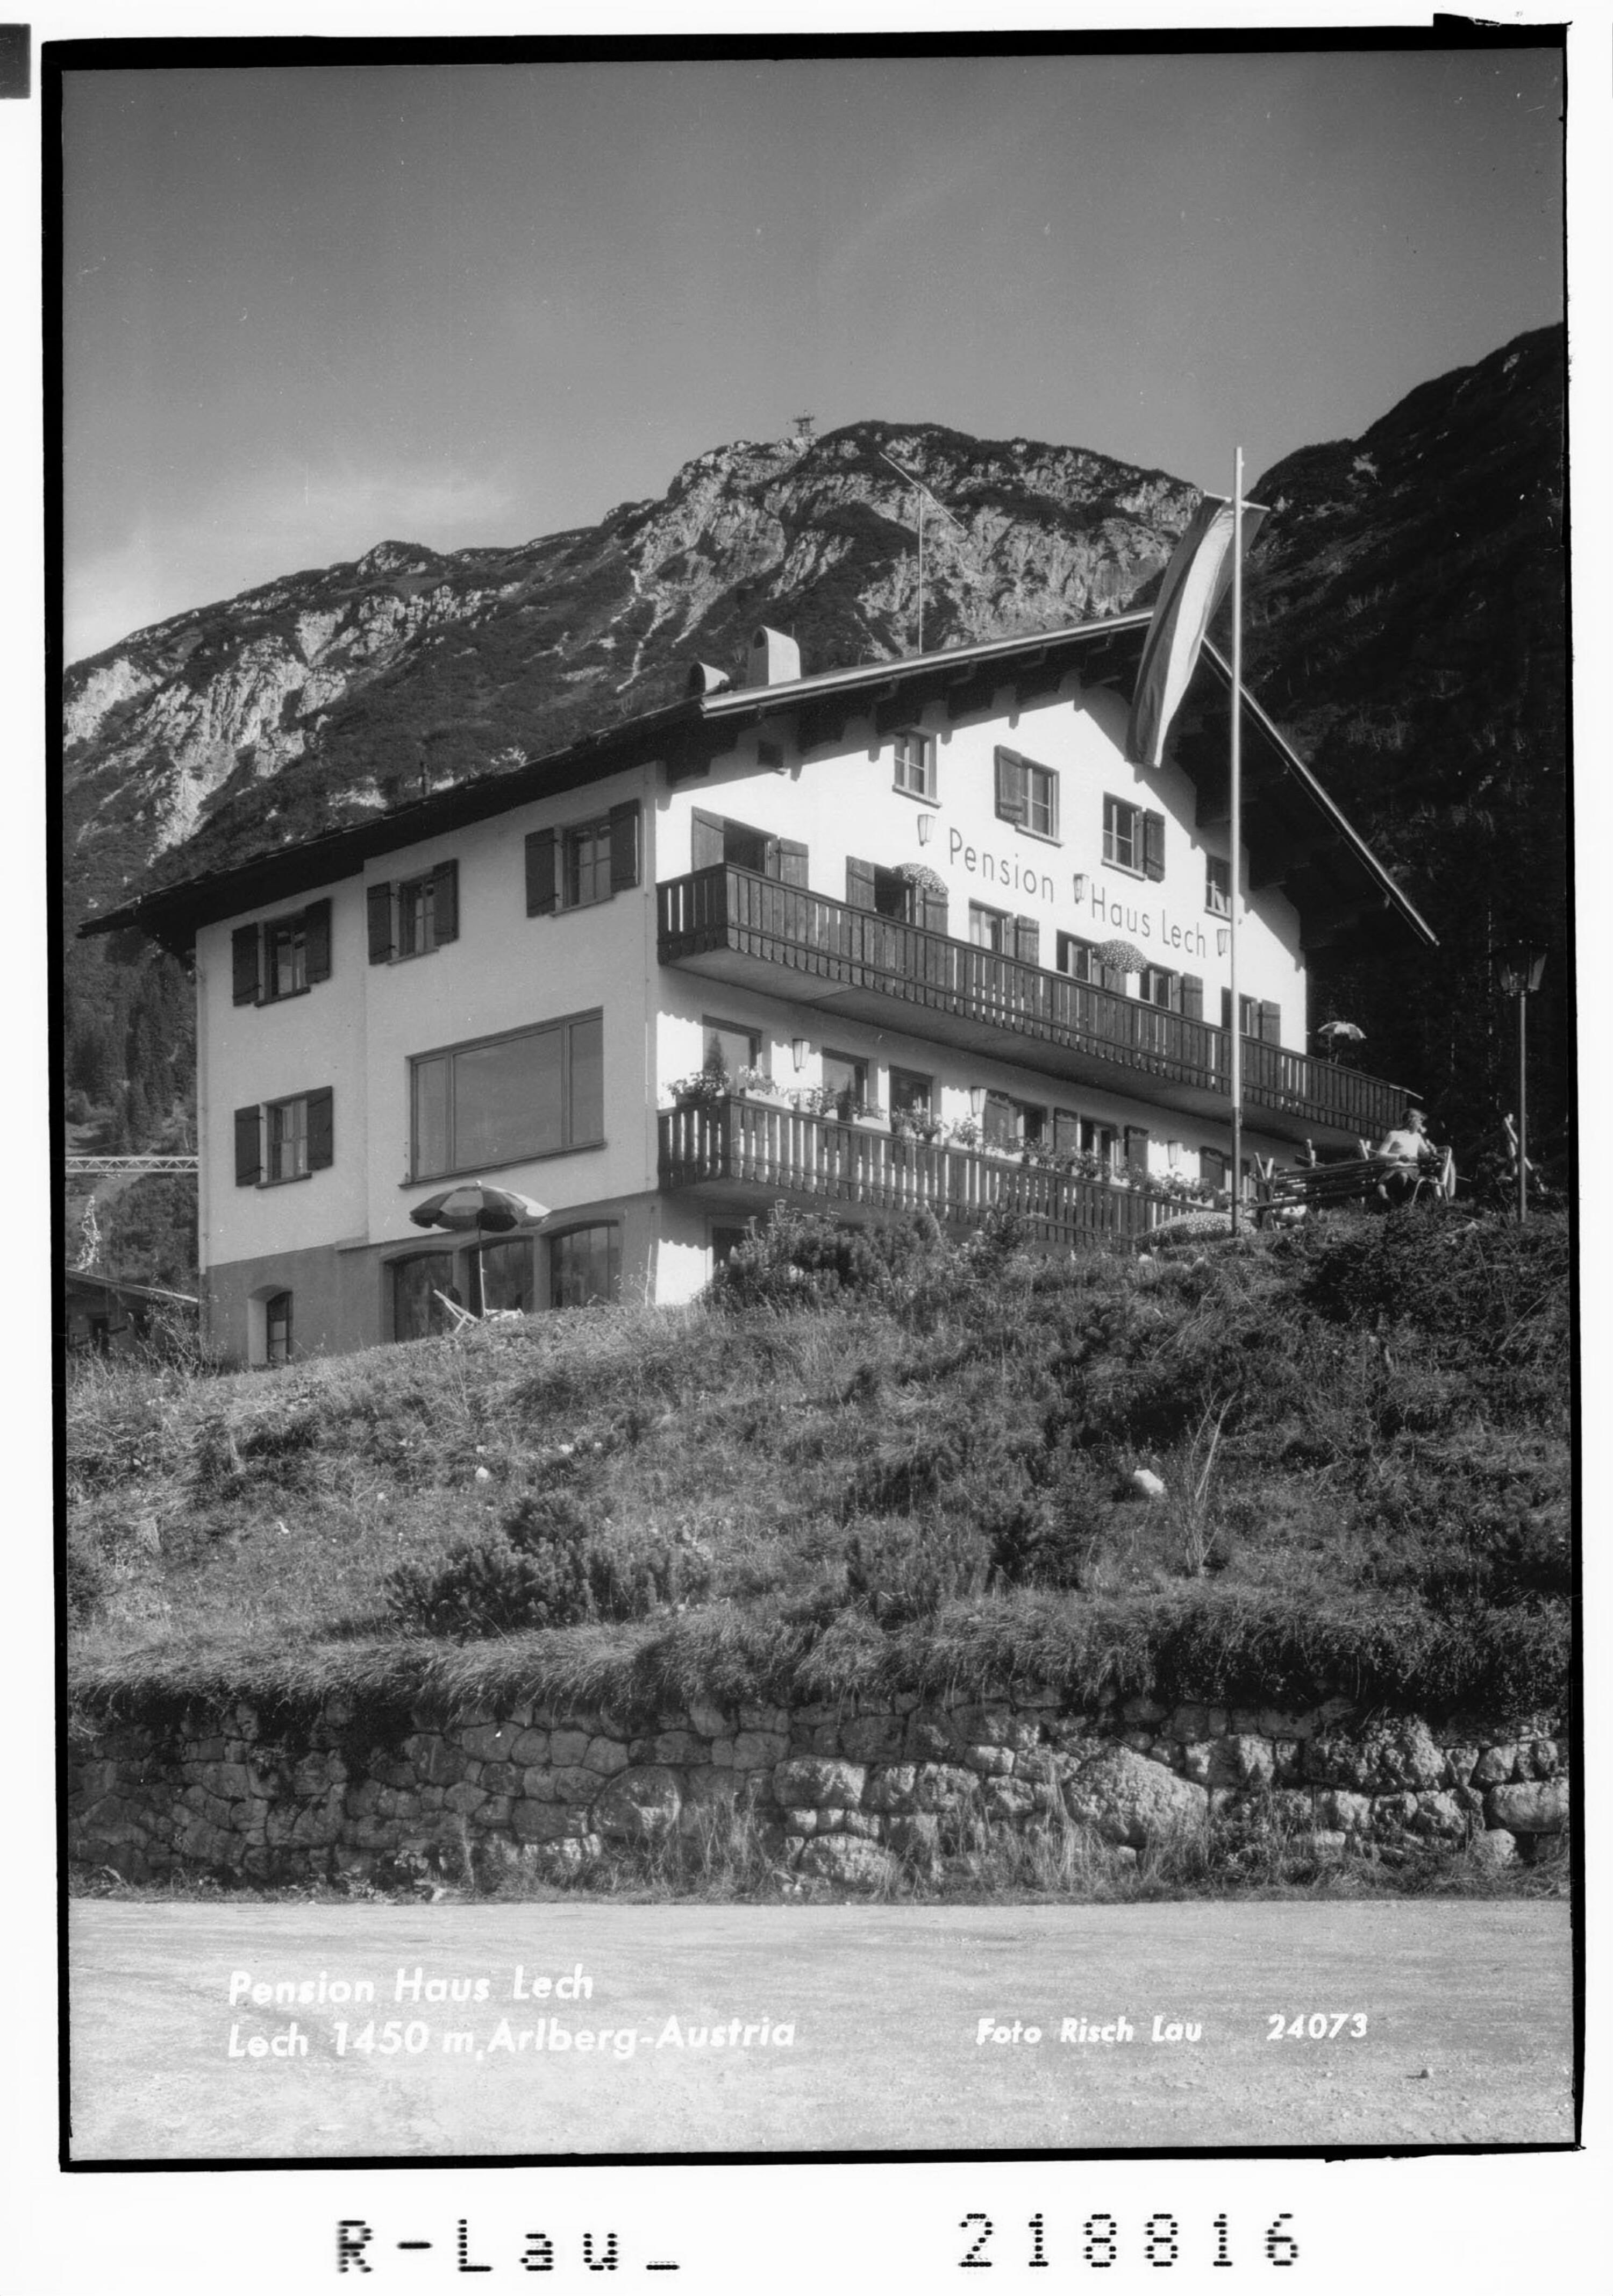 Pension Haus Lech Lech 1450 m, Arlberg - Austria></div>


    <hr>
    <div class=